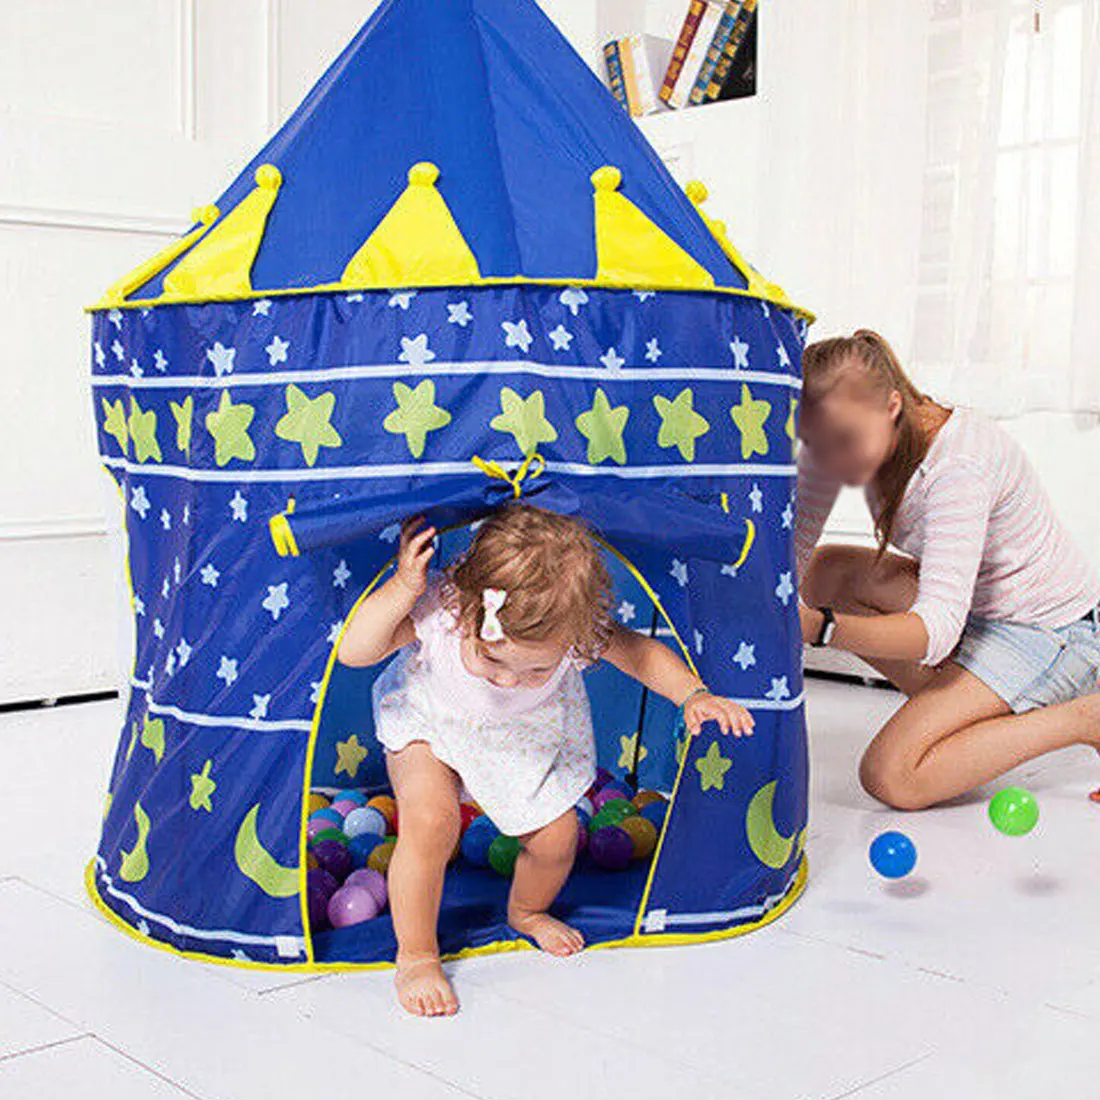 Игровая палатка детский бассейн с шариками палатка для детей детский игровой дом под тентом океан мяч игрушка палатки детская палатка игрушка принцесса игровой дом